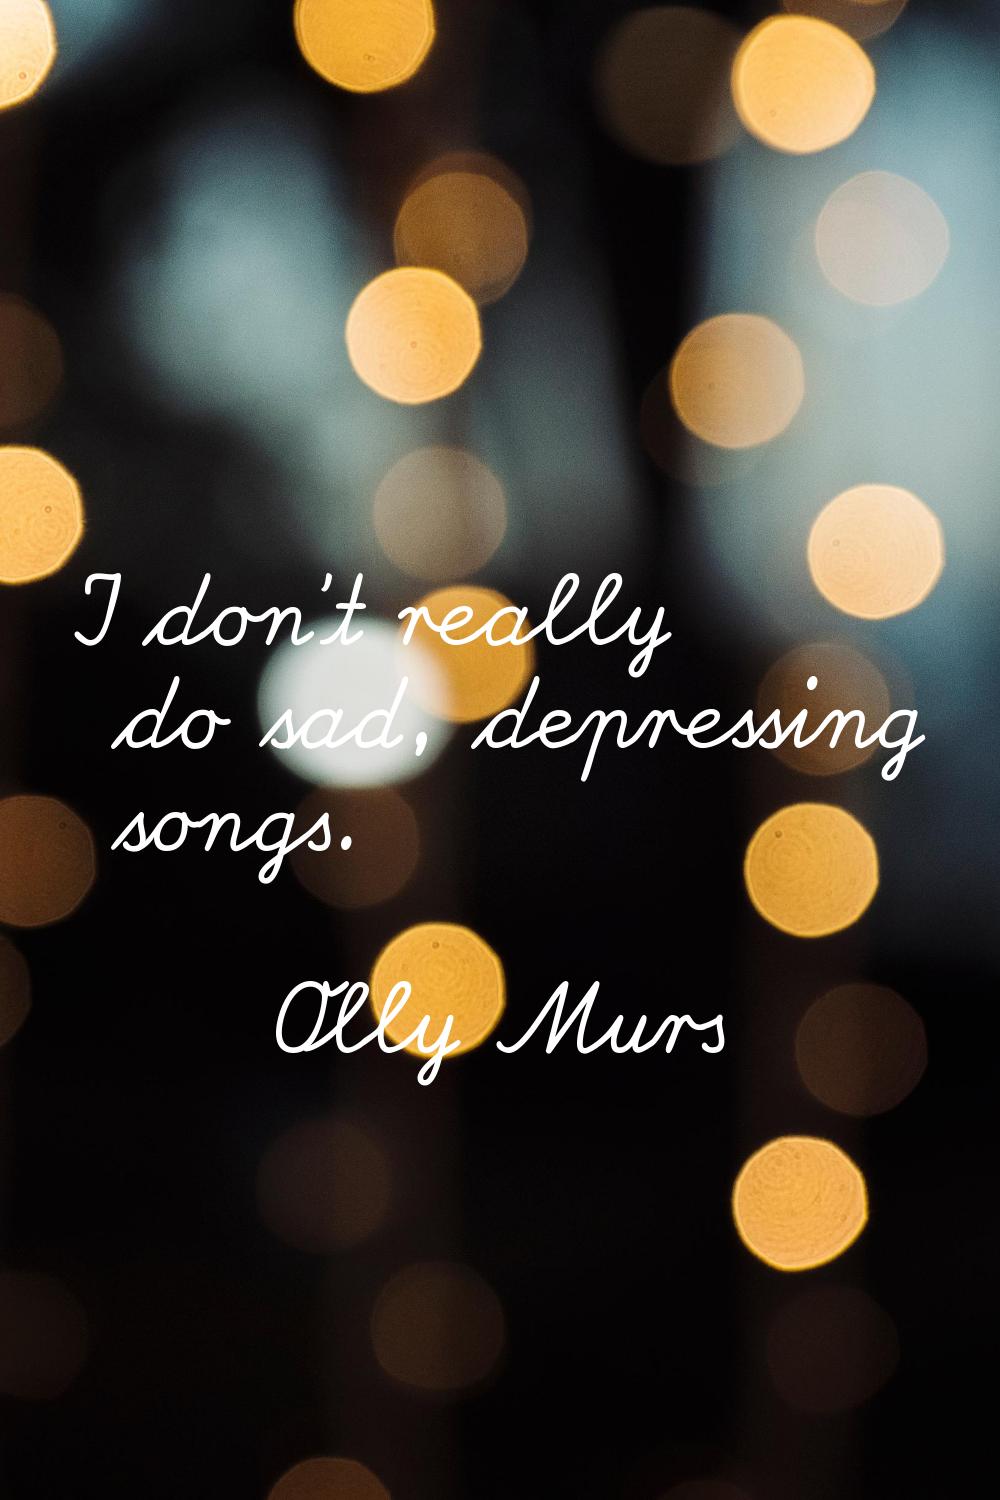 I don't really do sad, depressing songs.